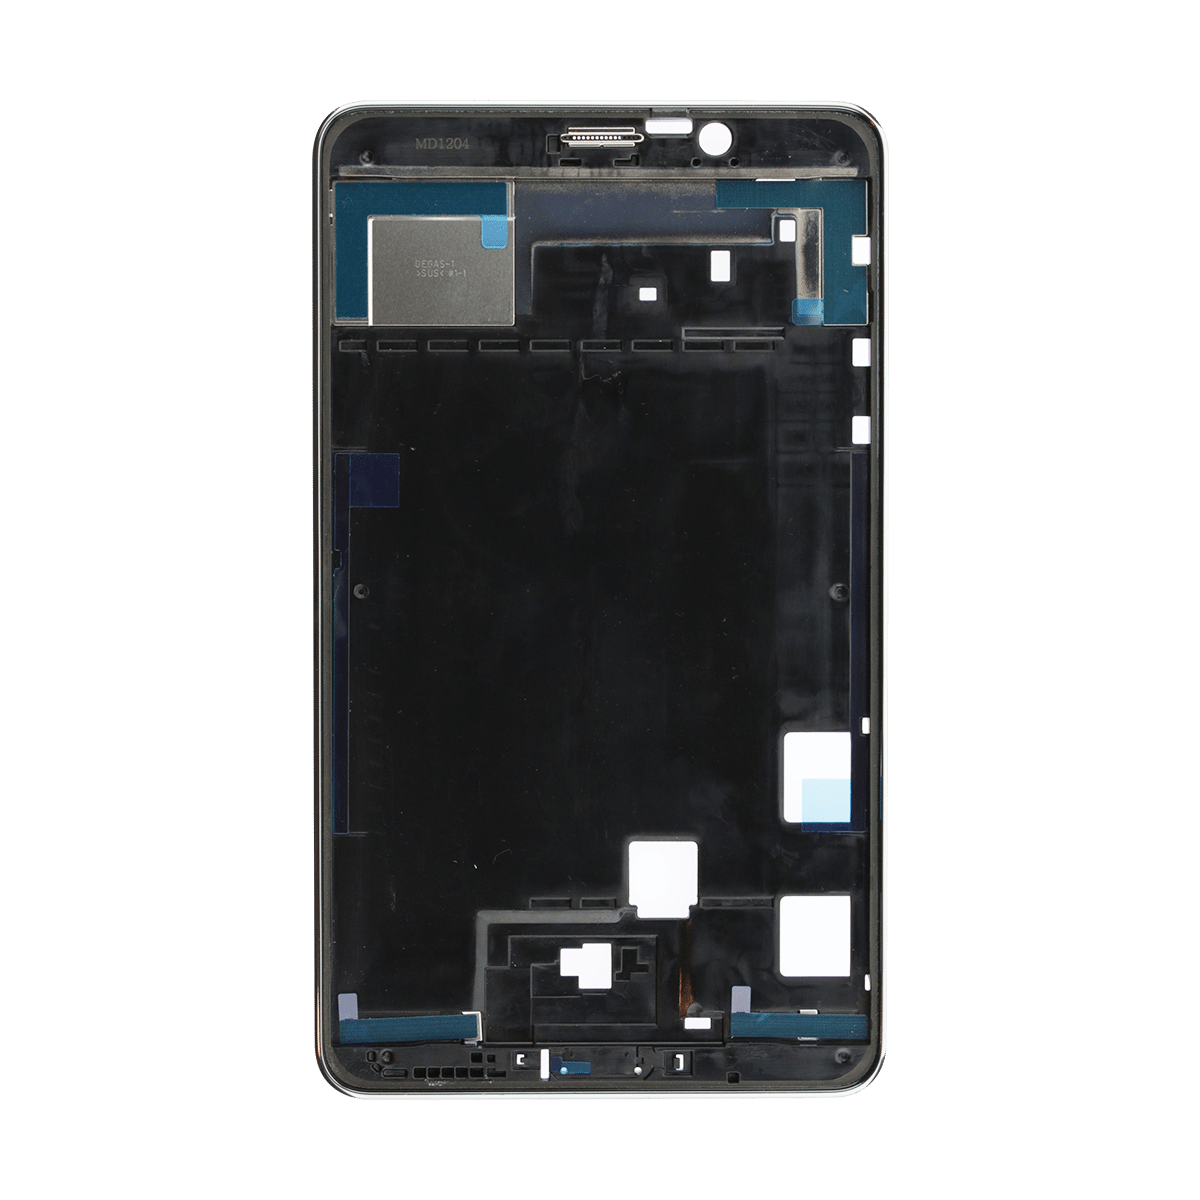 Samsung Galaxy Tab 4 7.0 SM-T230 Middle Frame & Bezel